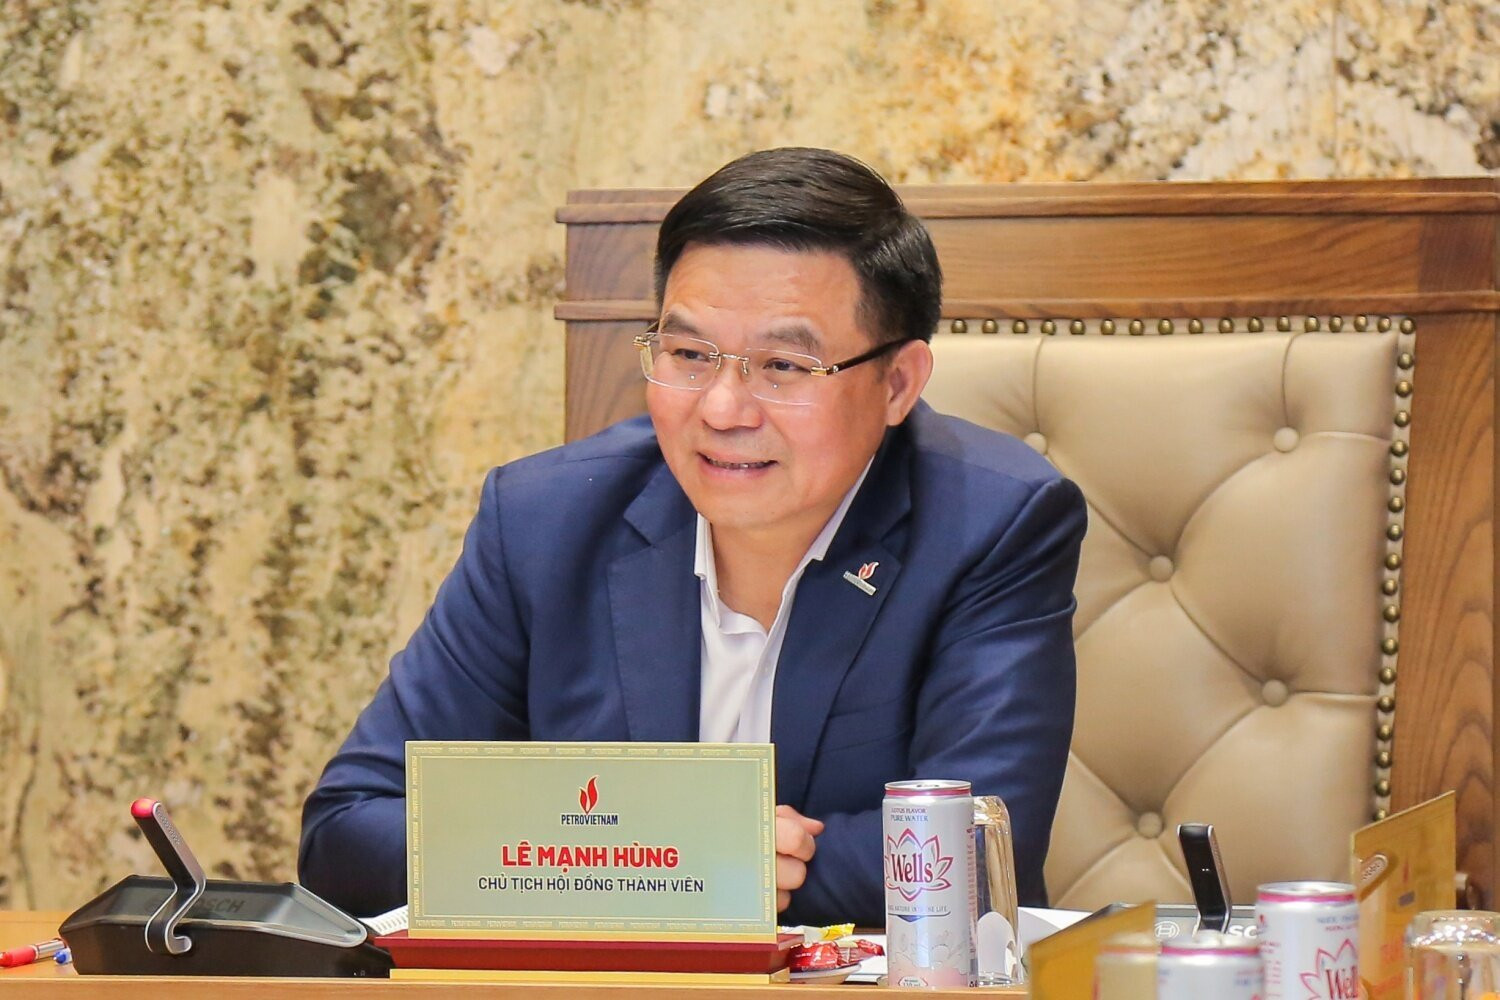 Chủ tịch HĐTV, Tổng Giám đốc Lê Mạnh Hùng phát biểu tại buổi làm việc.